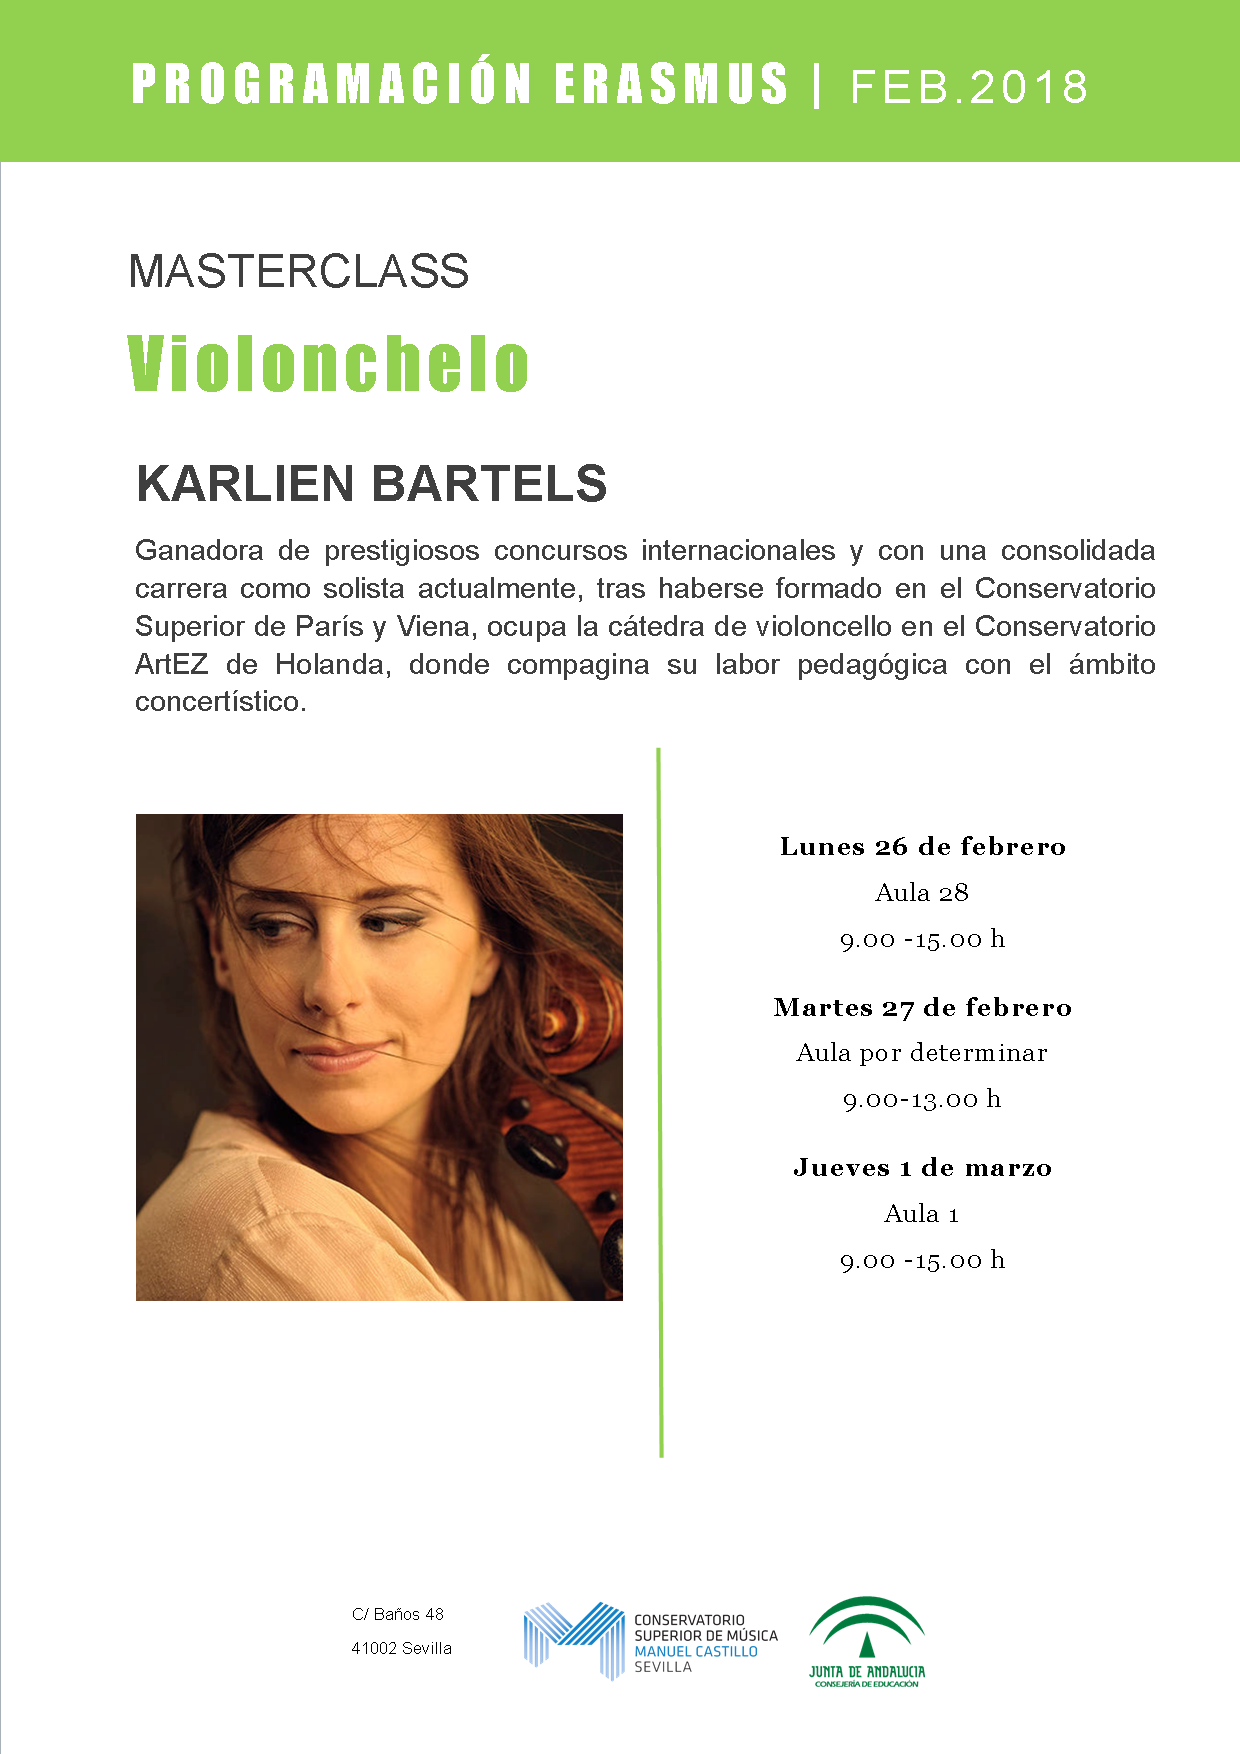 Masterclass de violonchelo — Karlien Bartels